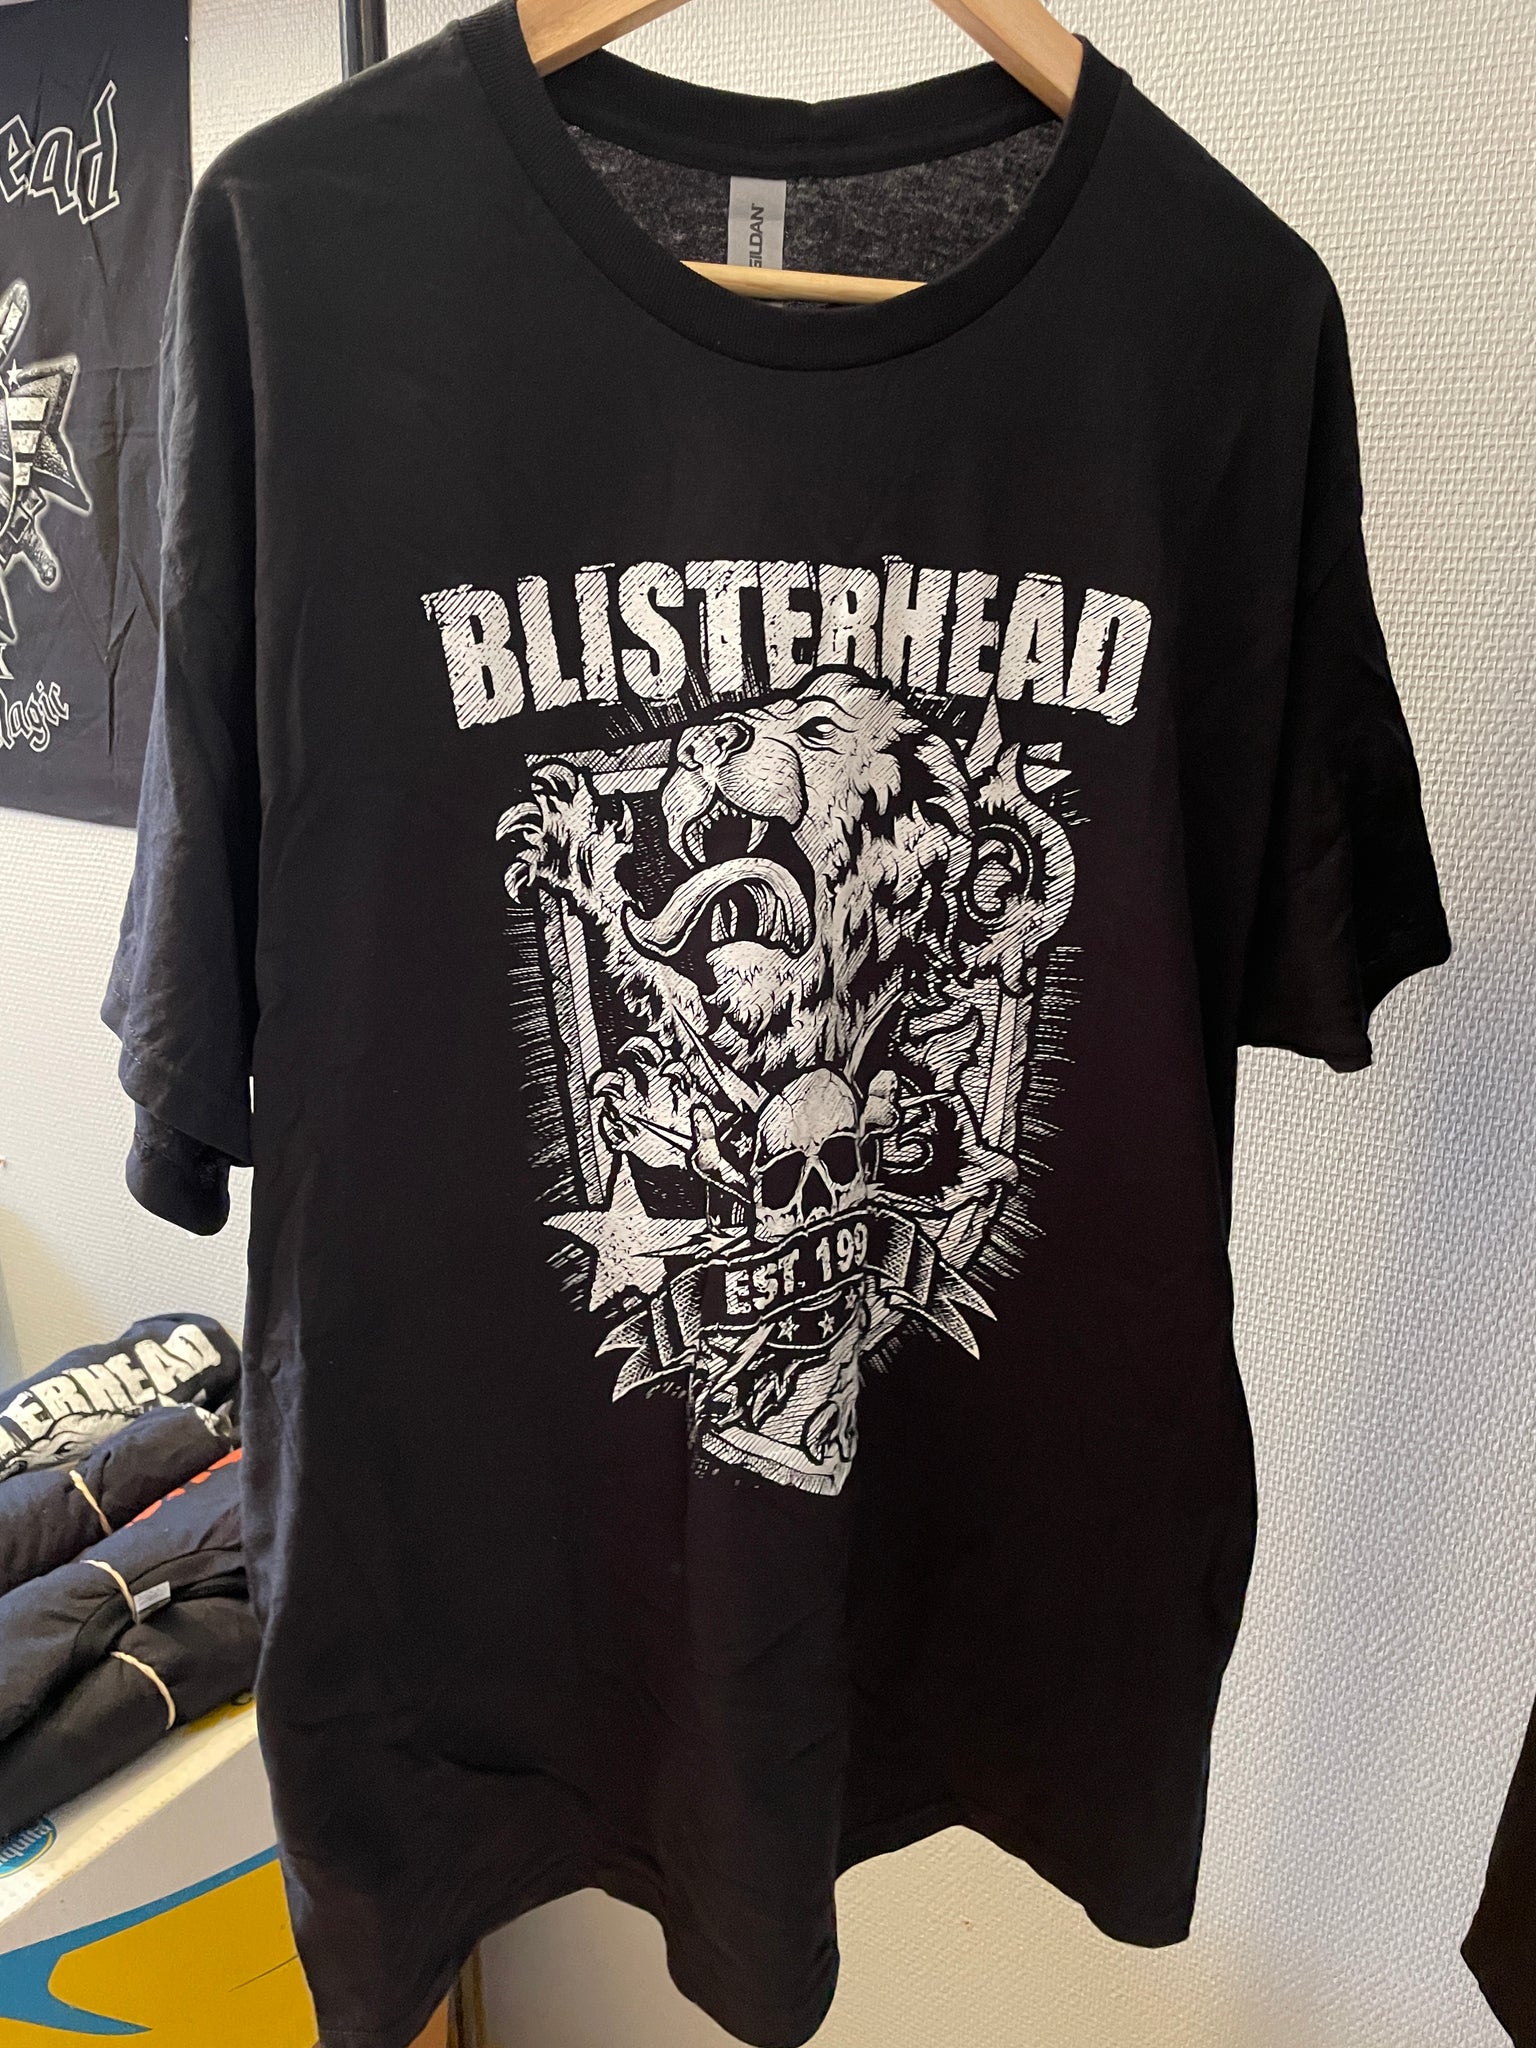 Blisterhead - "est. 1998" (t-skjorte B&W)